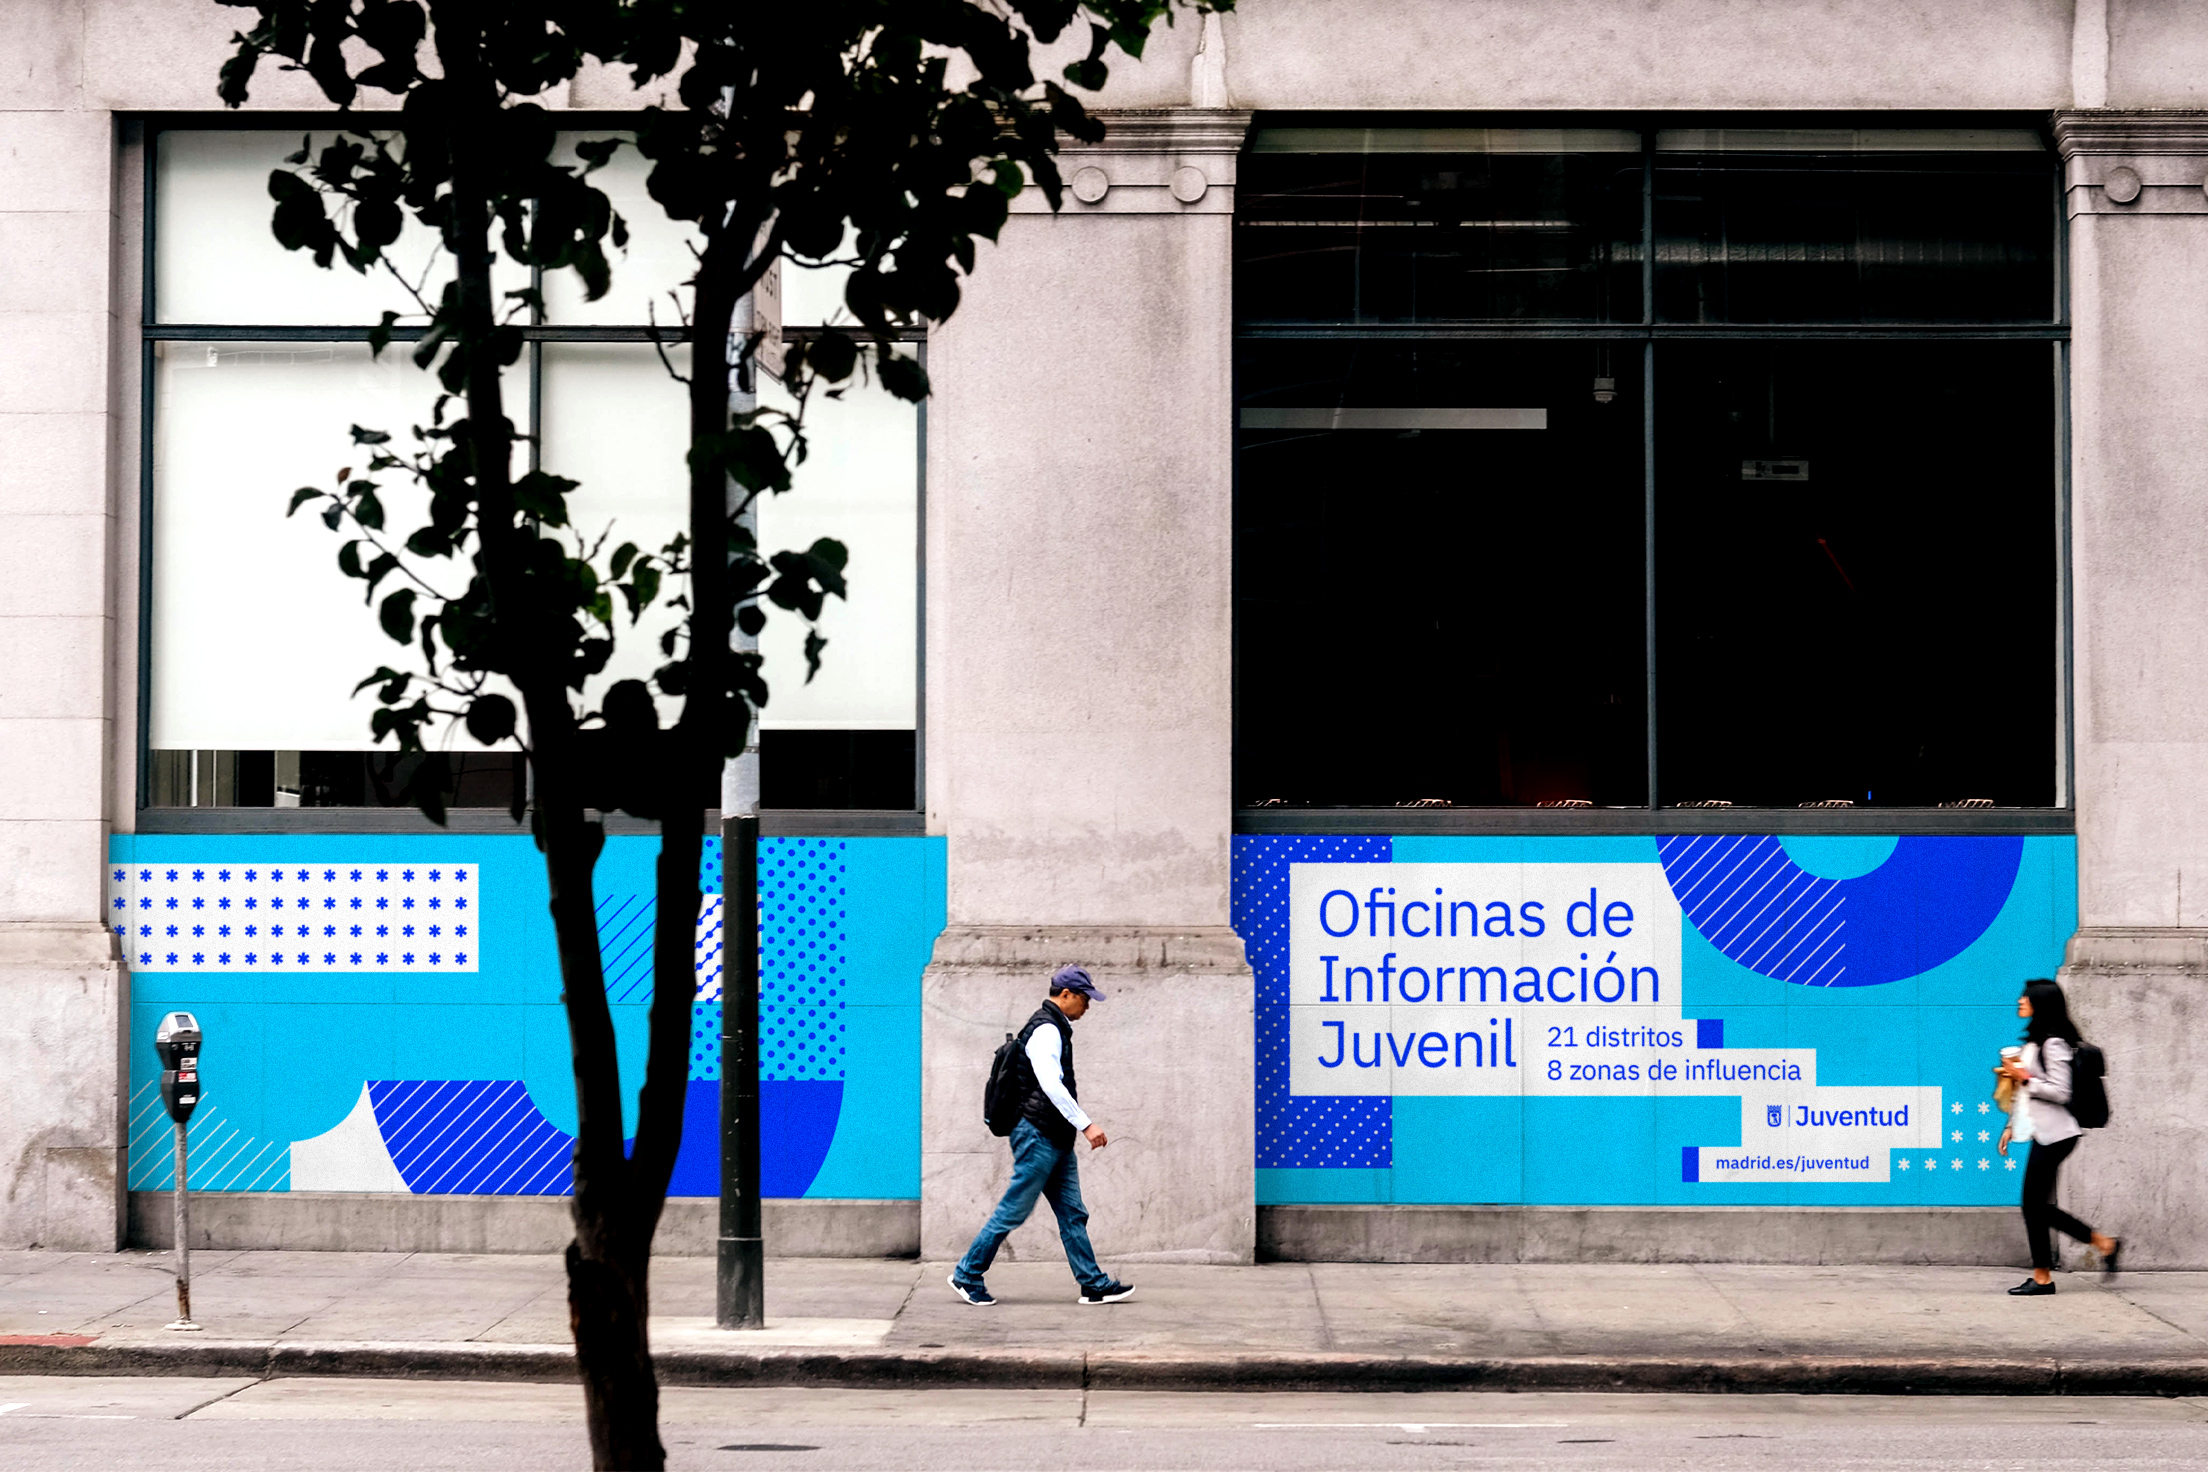 Diseño de comunicación corporativa del Área de Juventud del Ayuntamiento de Madrid, aplicado la fachada de un edificio